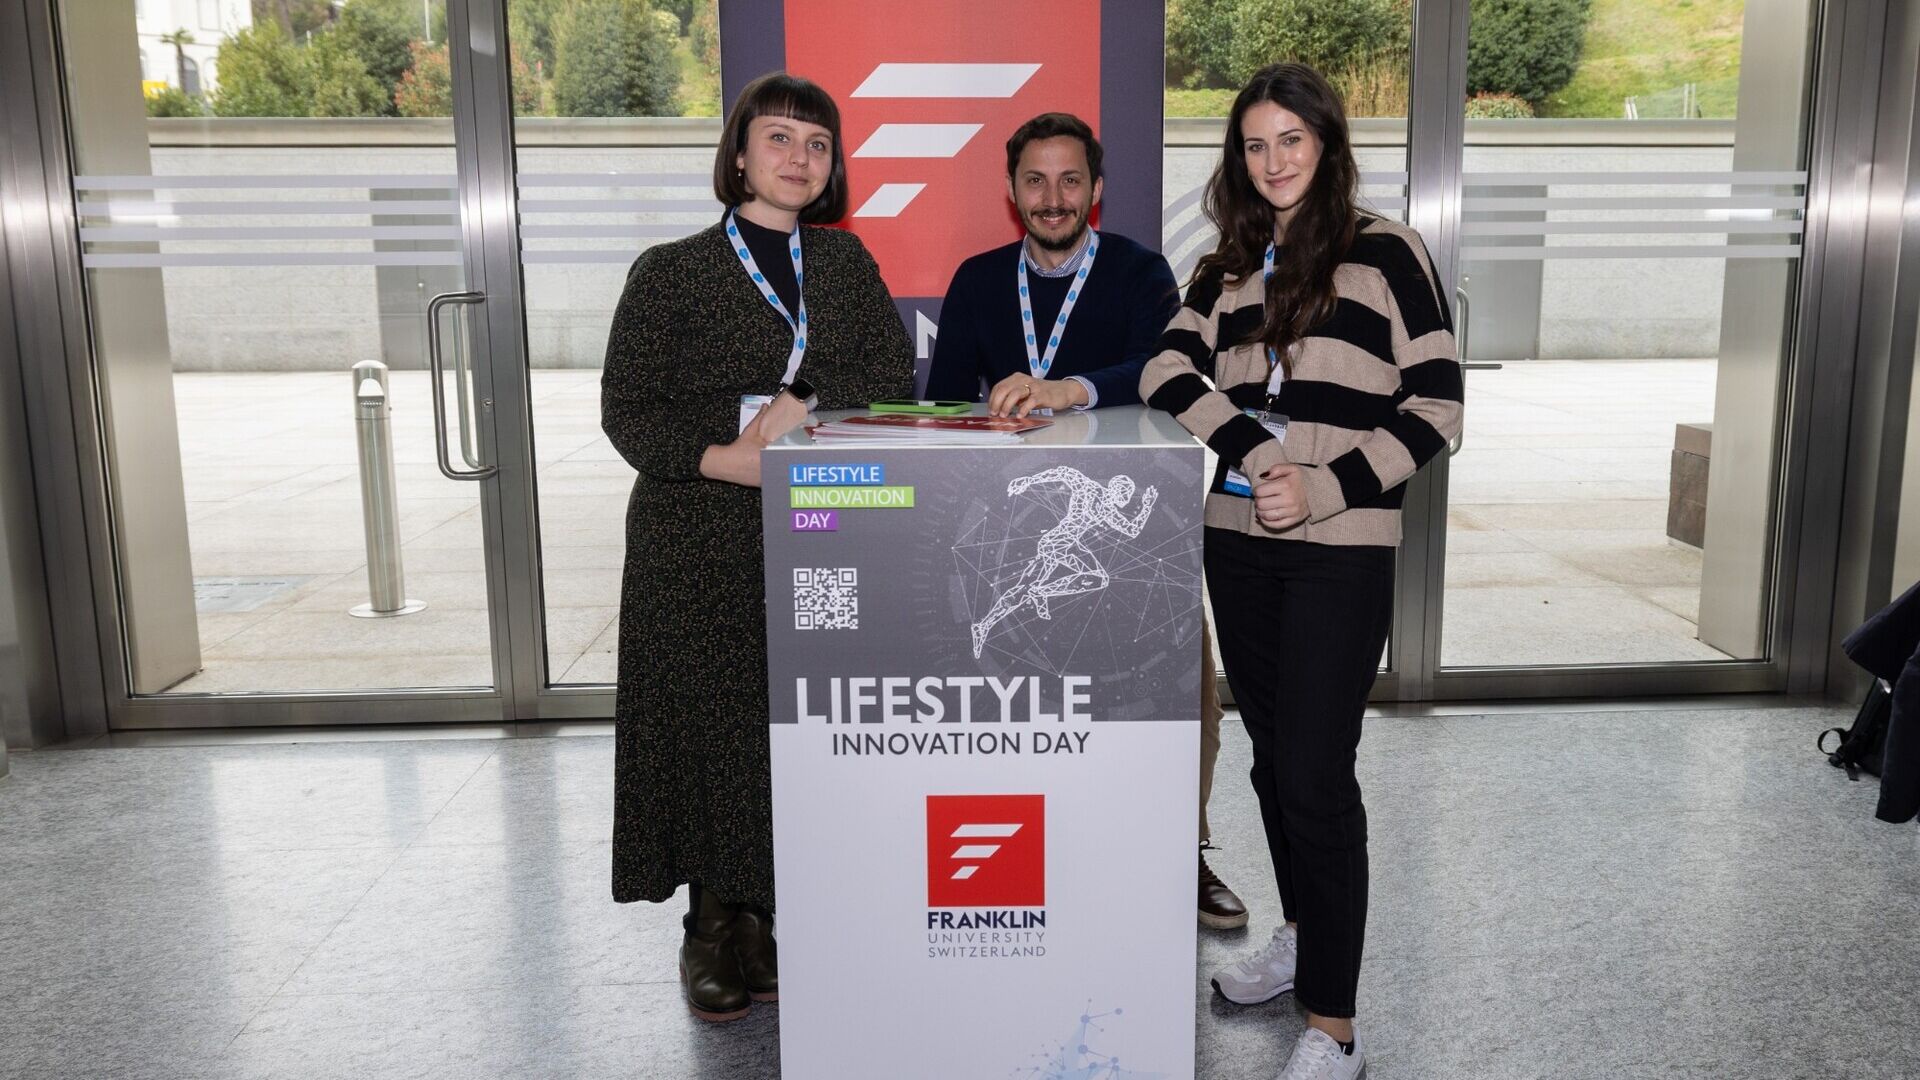 Lifestyle Innovation Day: gli stand al LAC di Lugano il 13 marzo 2023